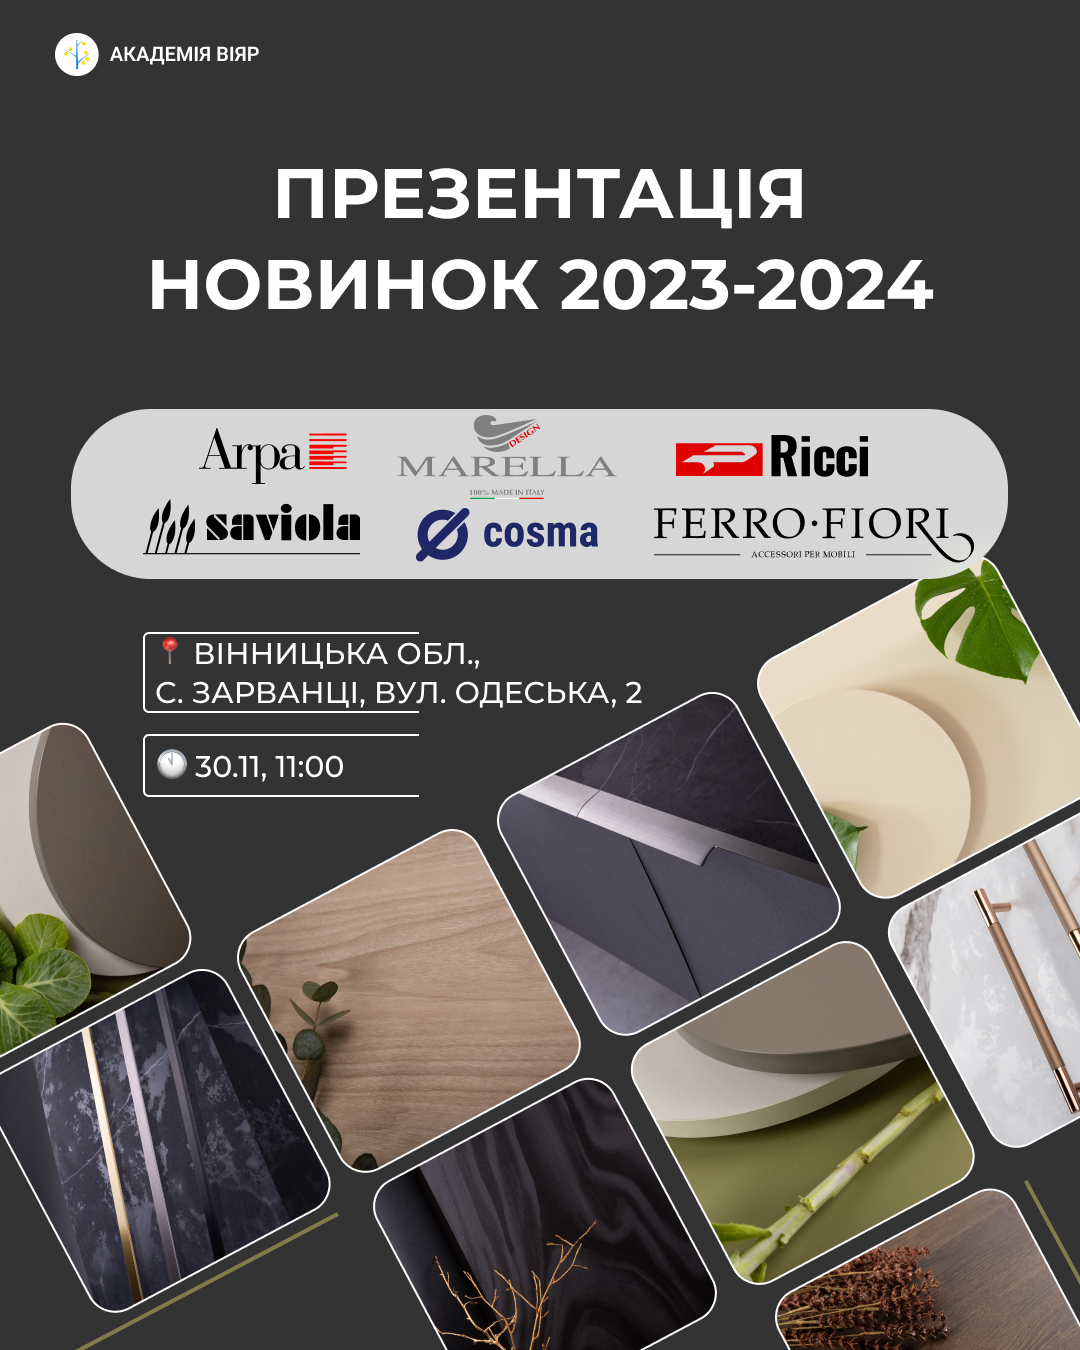 Презентуємо новинки 2023/24 у Вінниці!